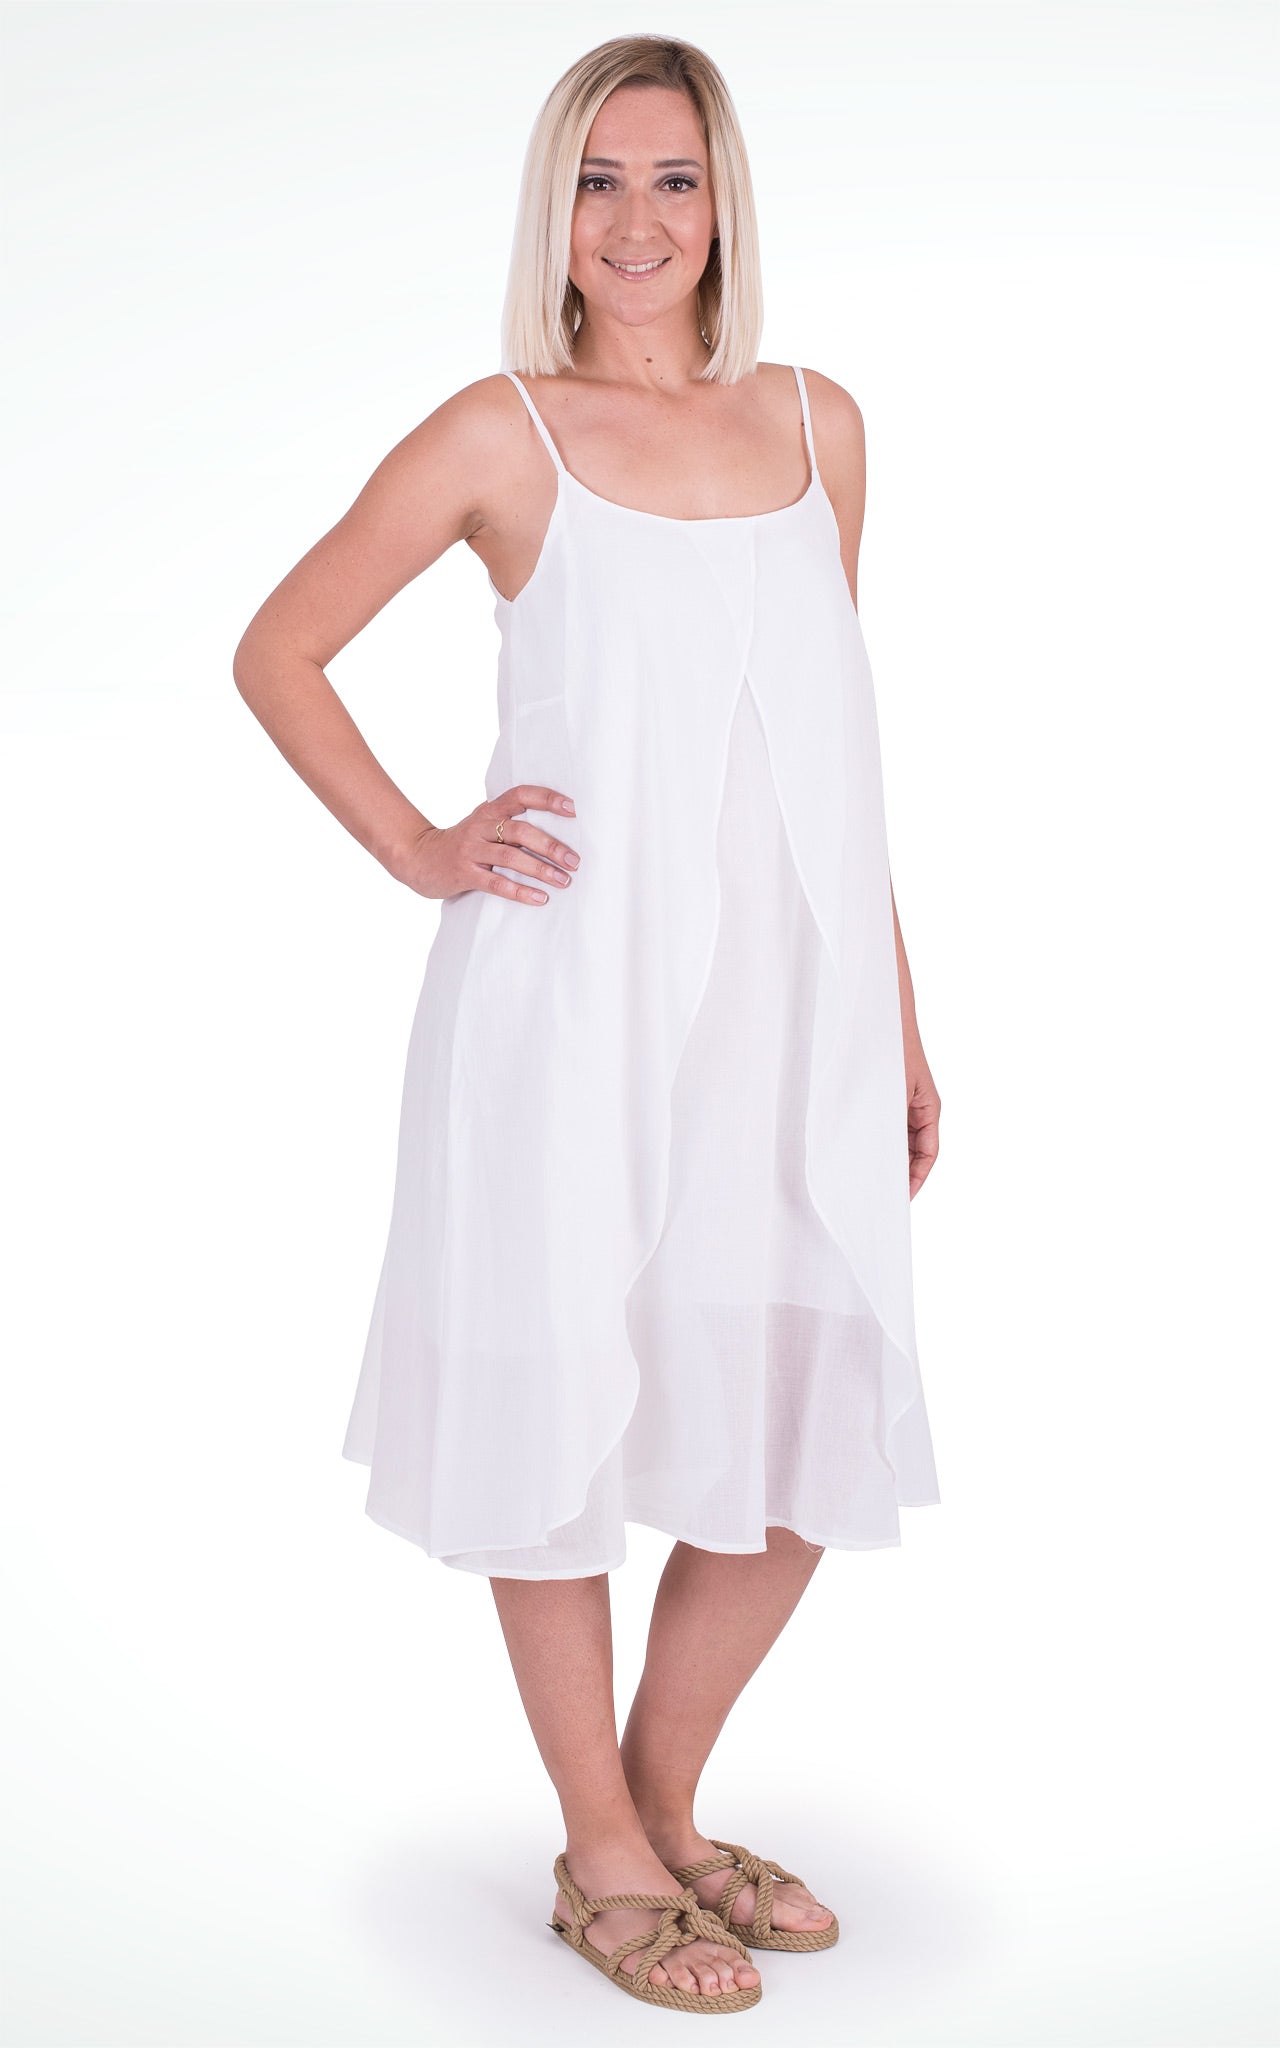 Women's White Cotton Wrap Dress with Spaghetti Straps